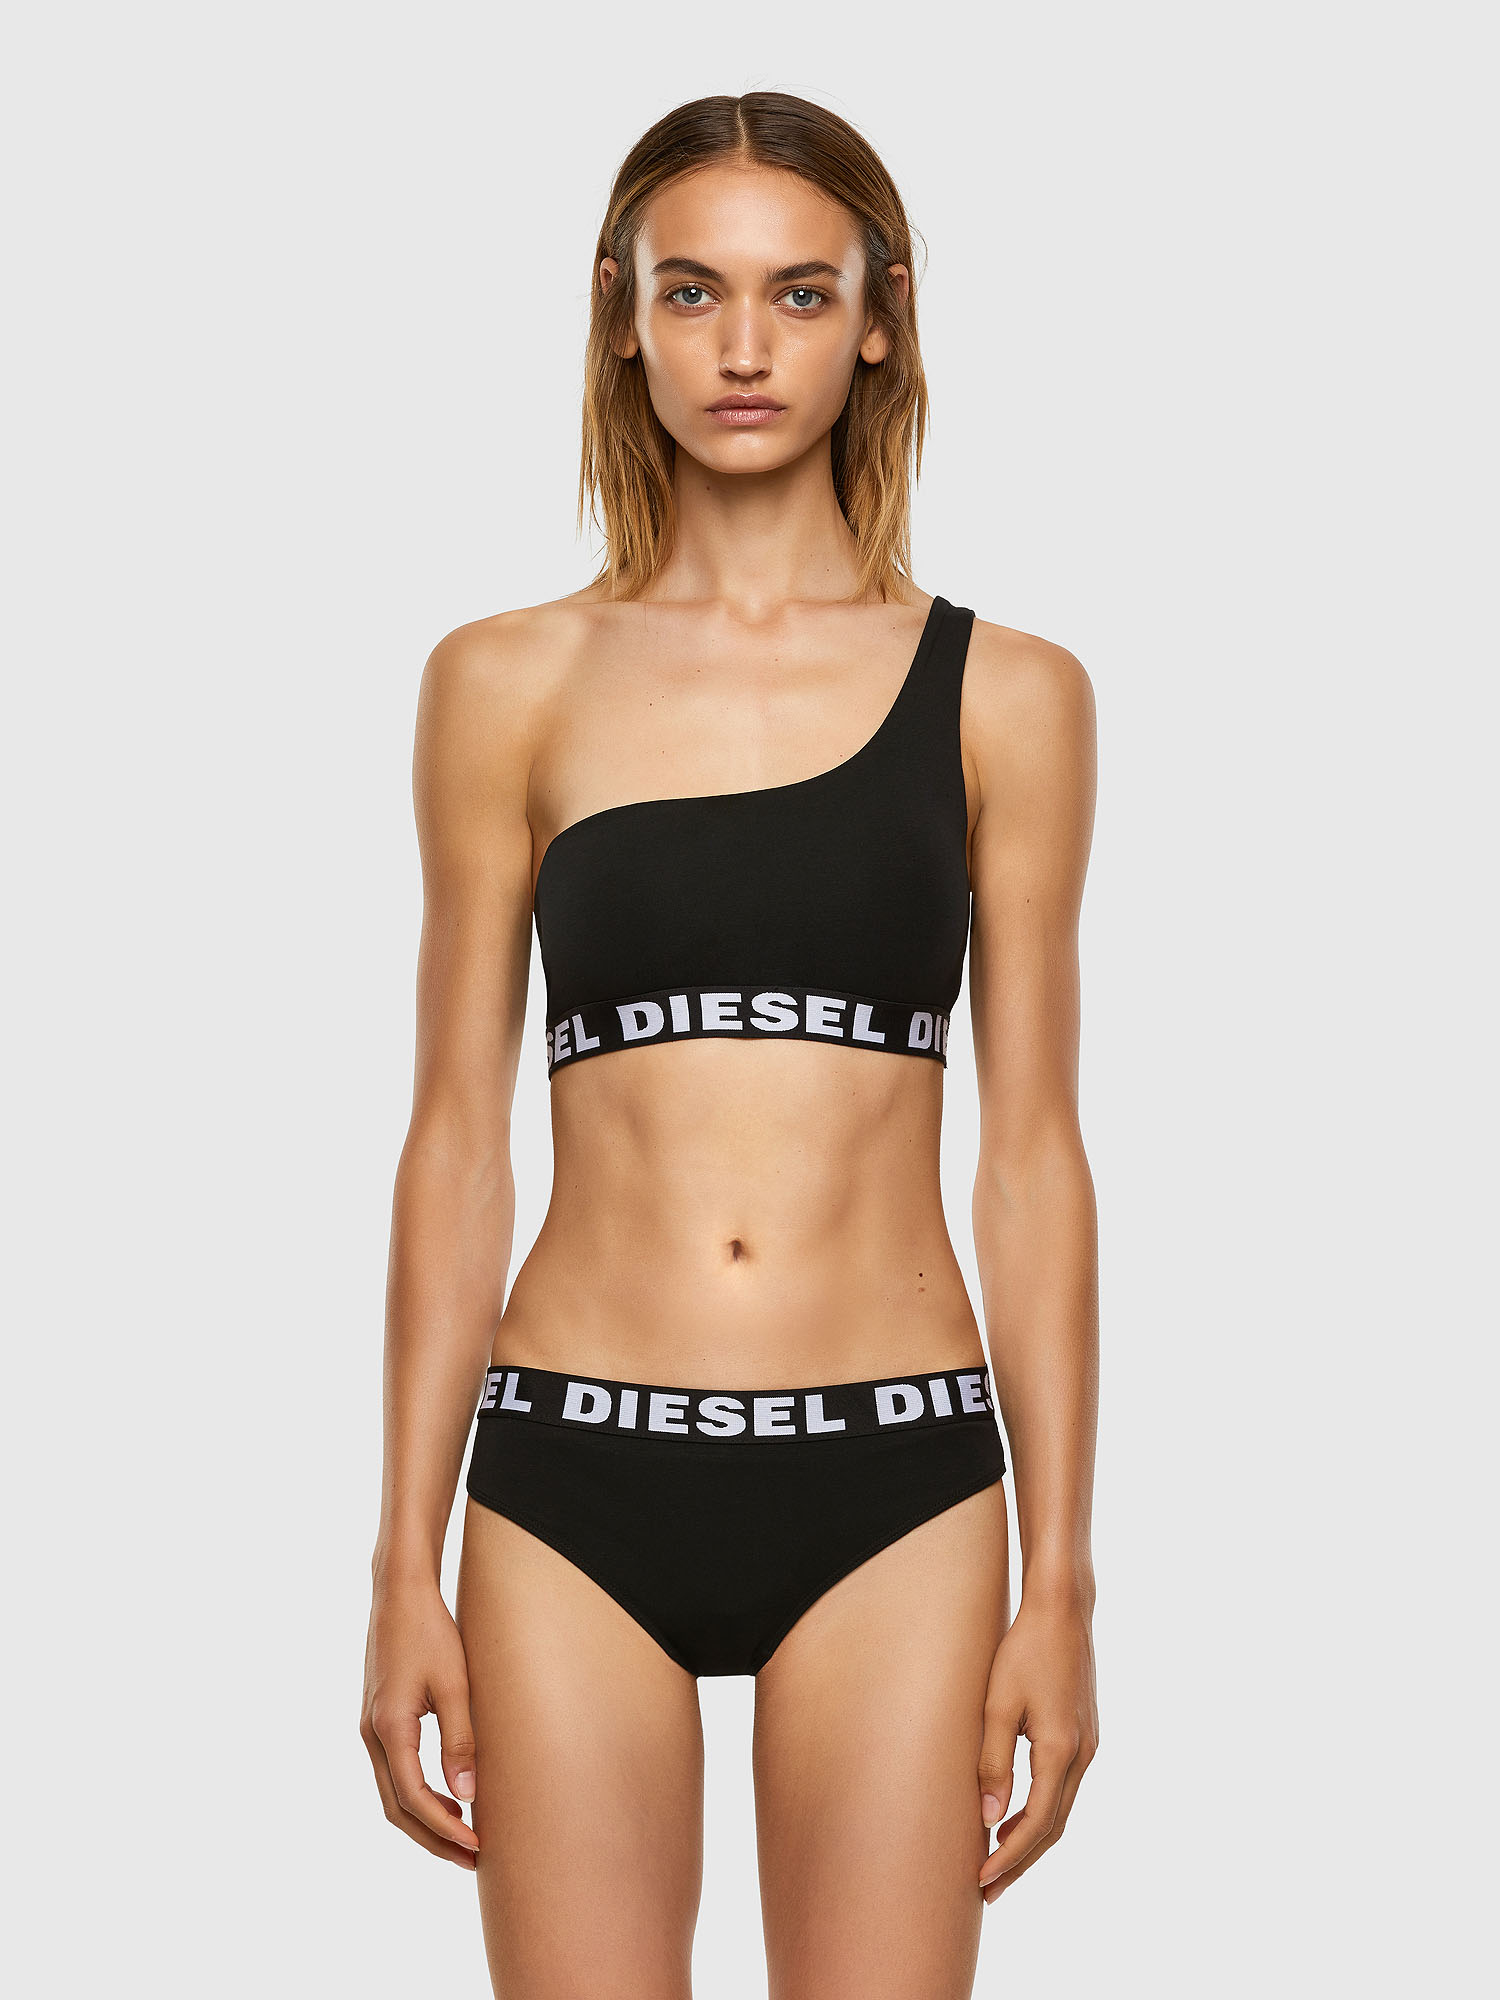 Diesel - UFPN-ALLY, Black - Image 4